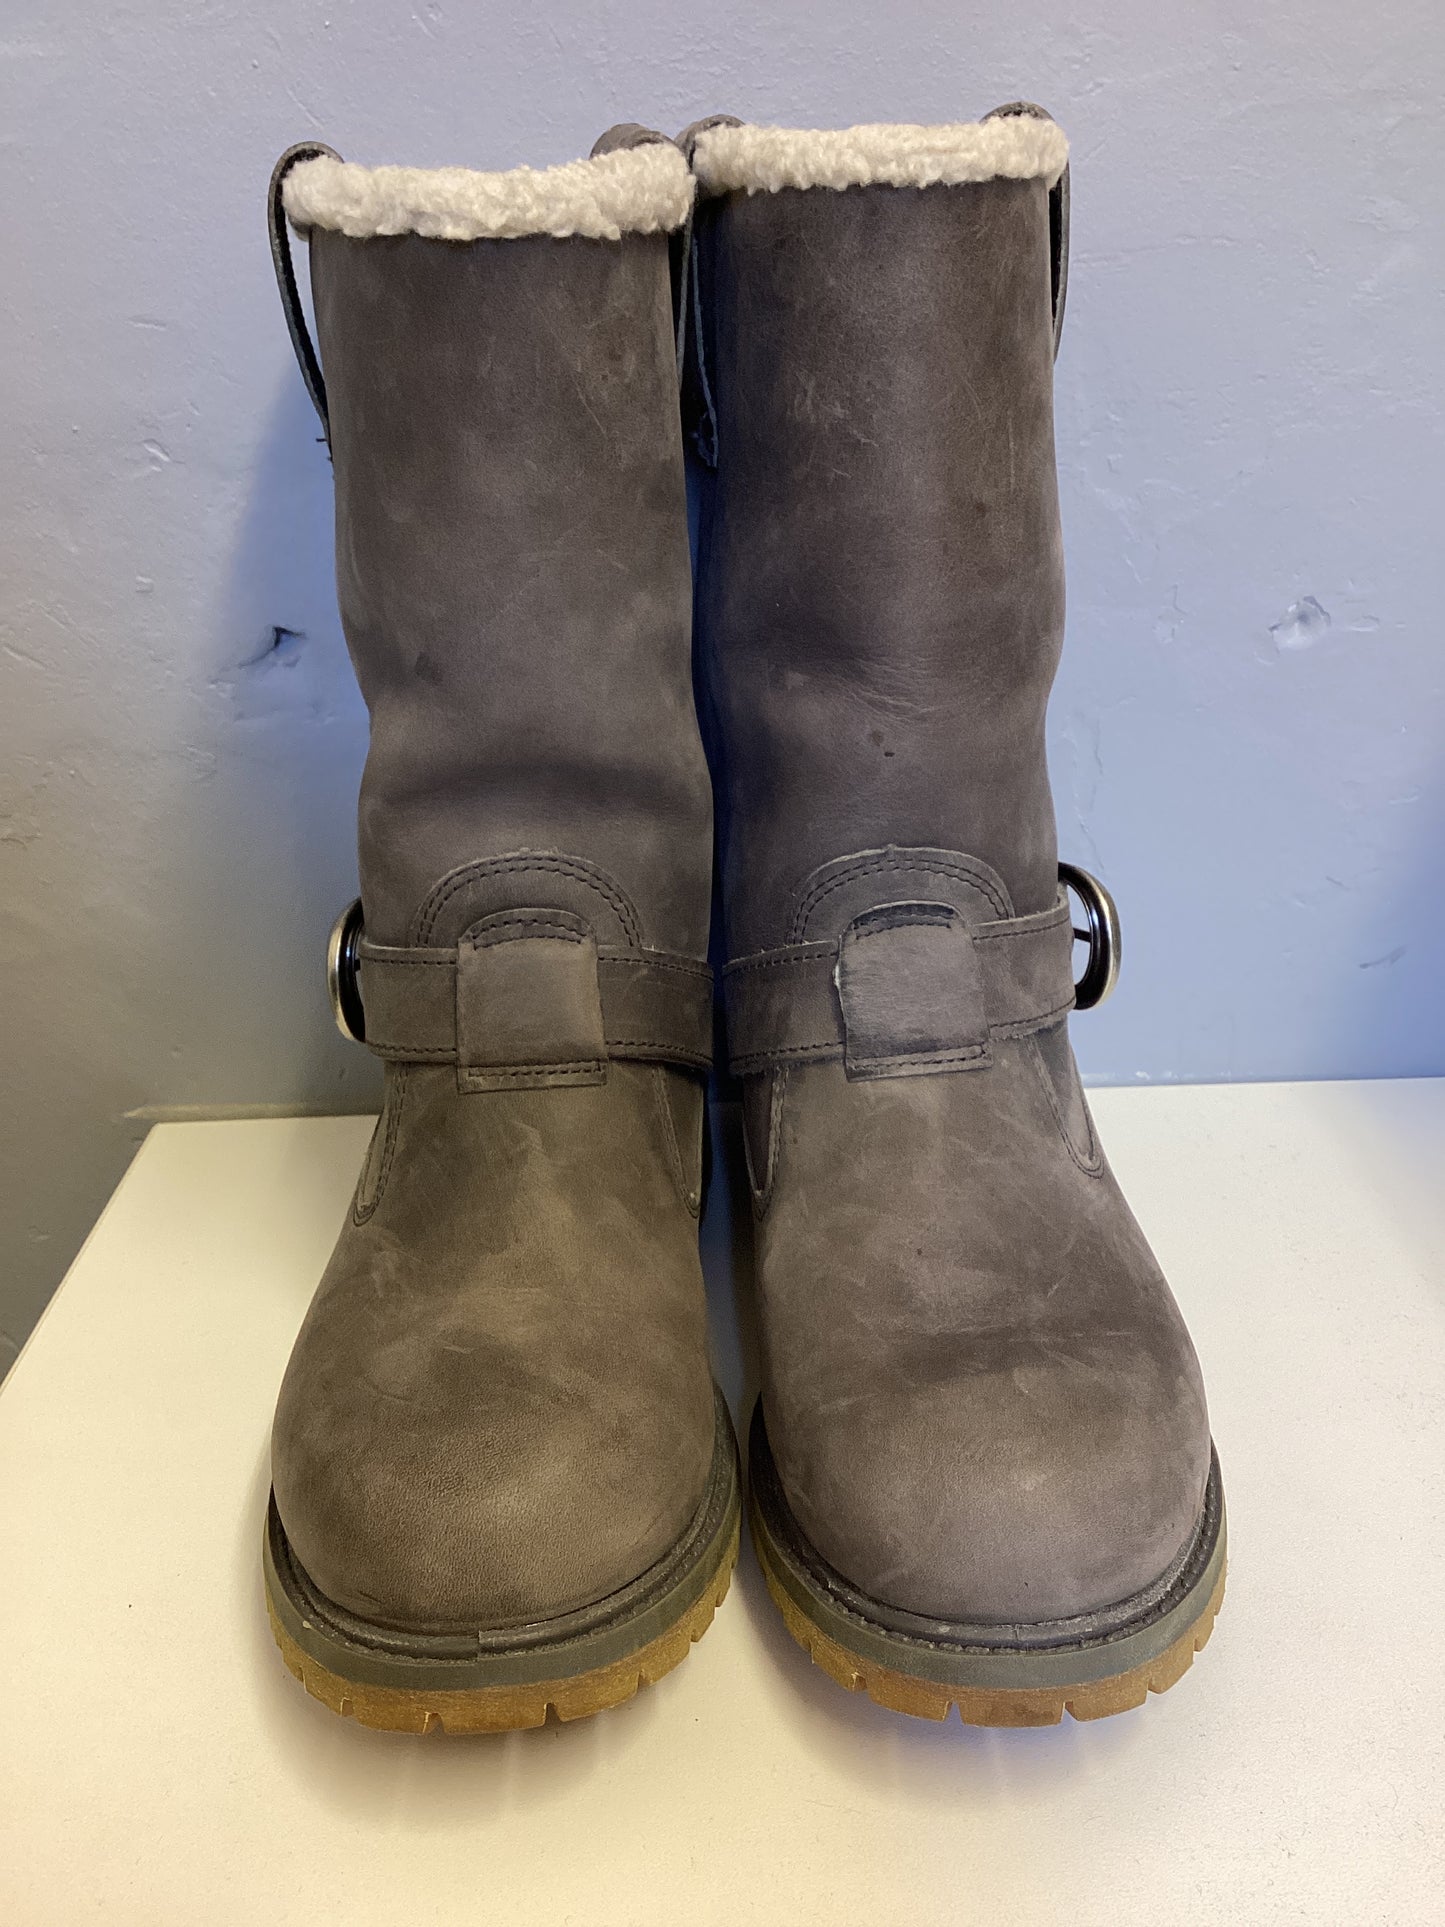 Timberland Waterproof Grey Boots Size UK 4